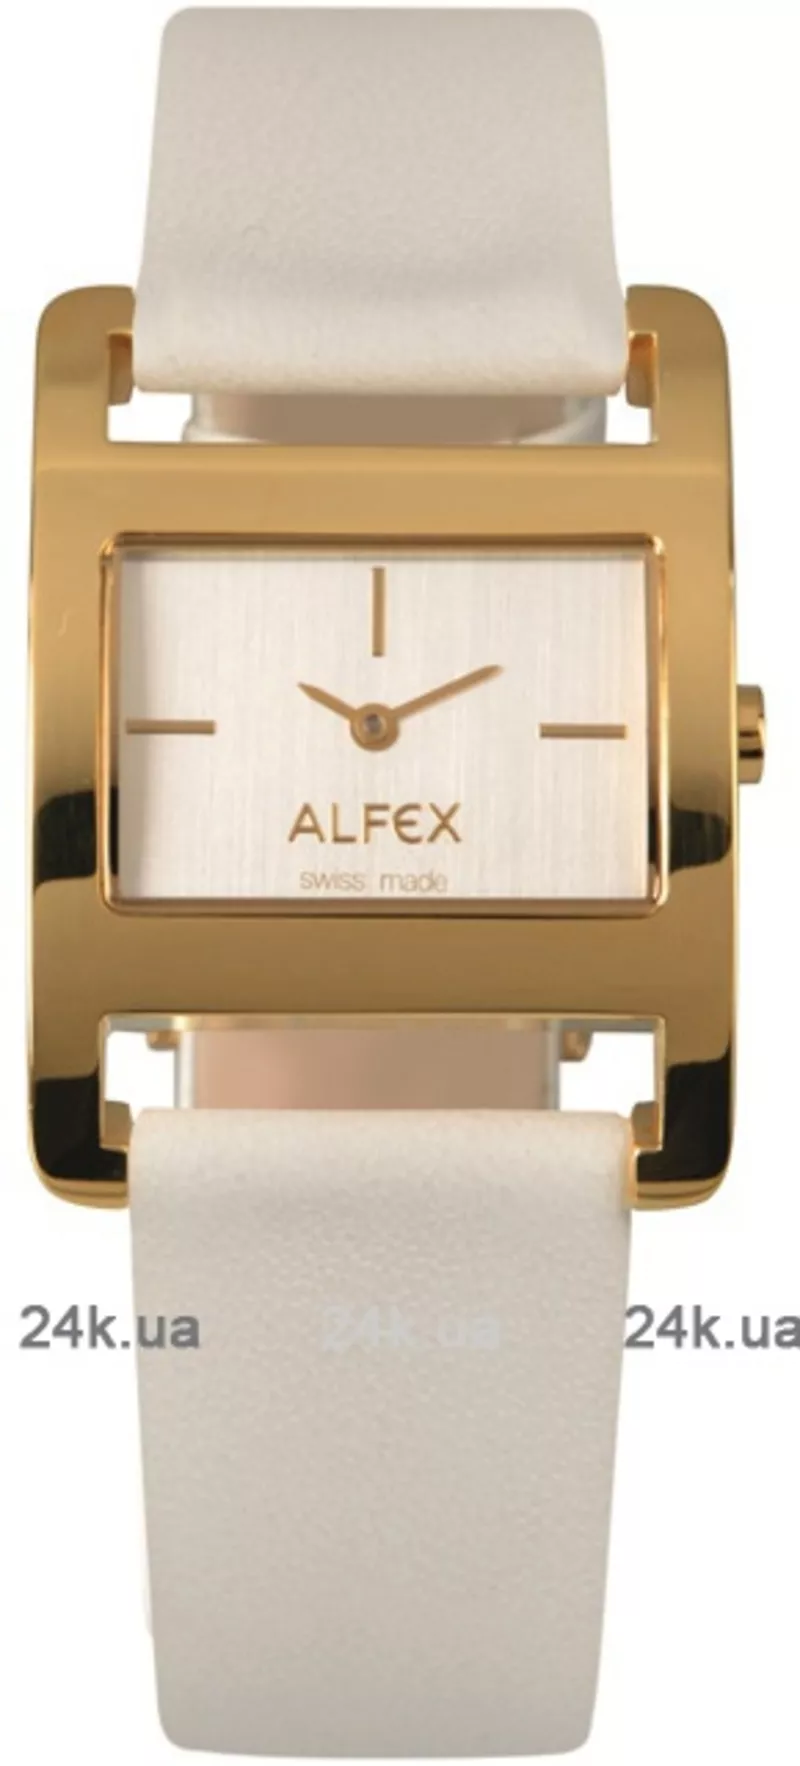 Часы Alfex 5723/139